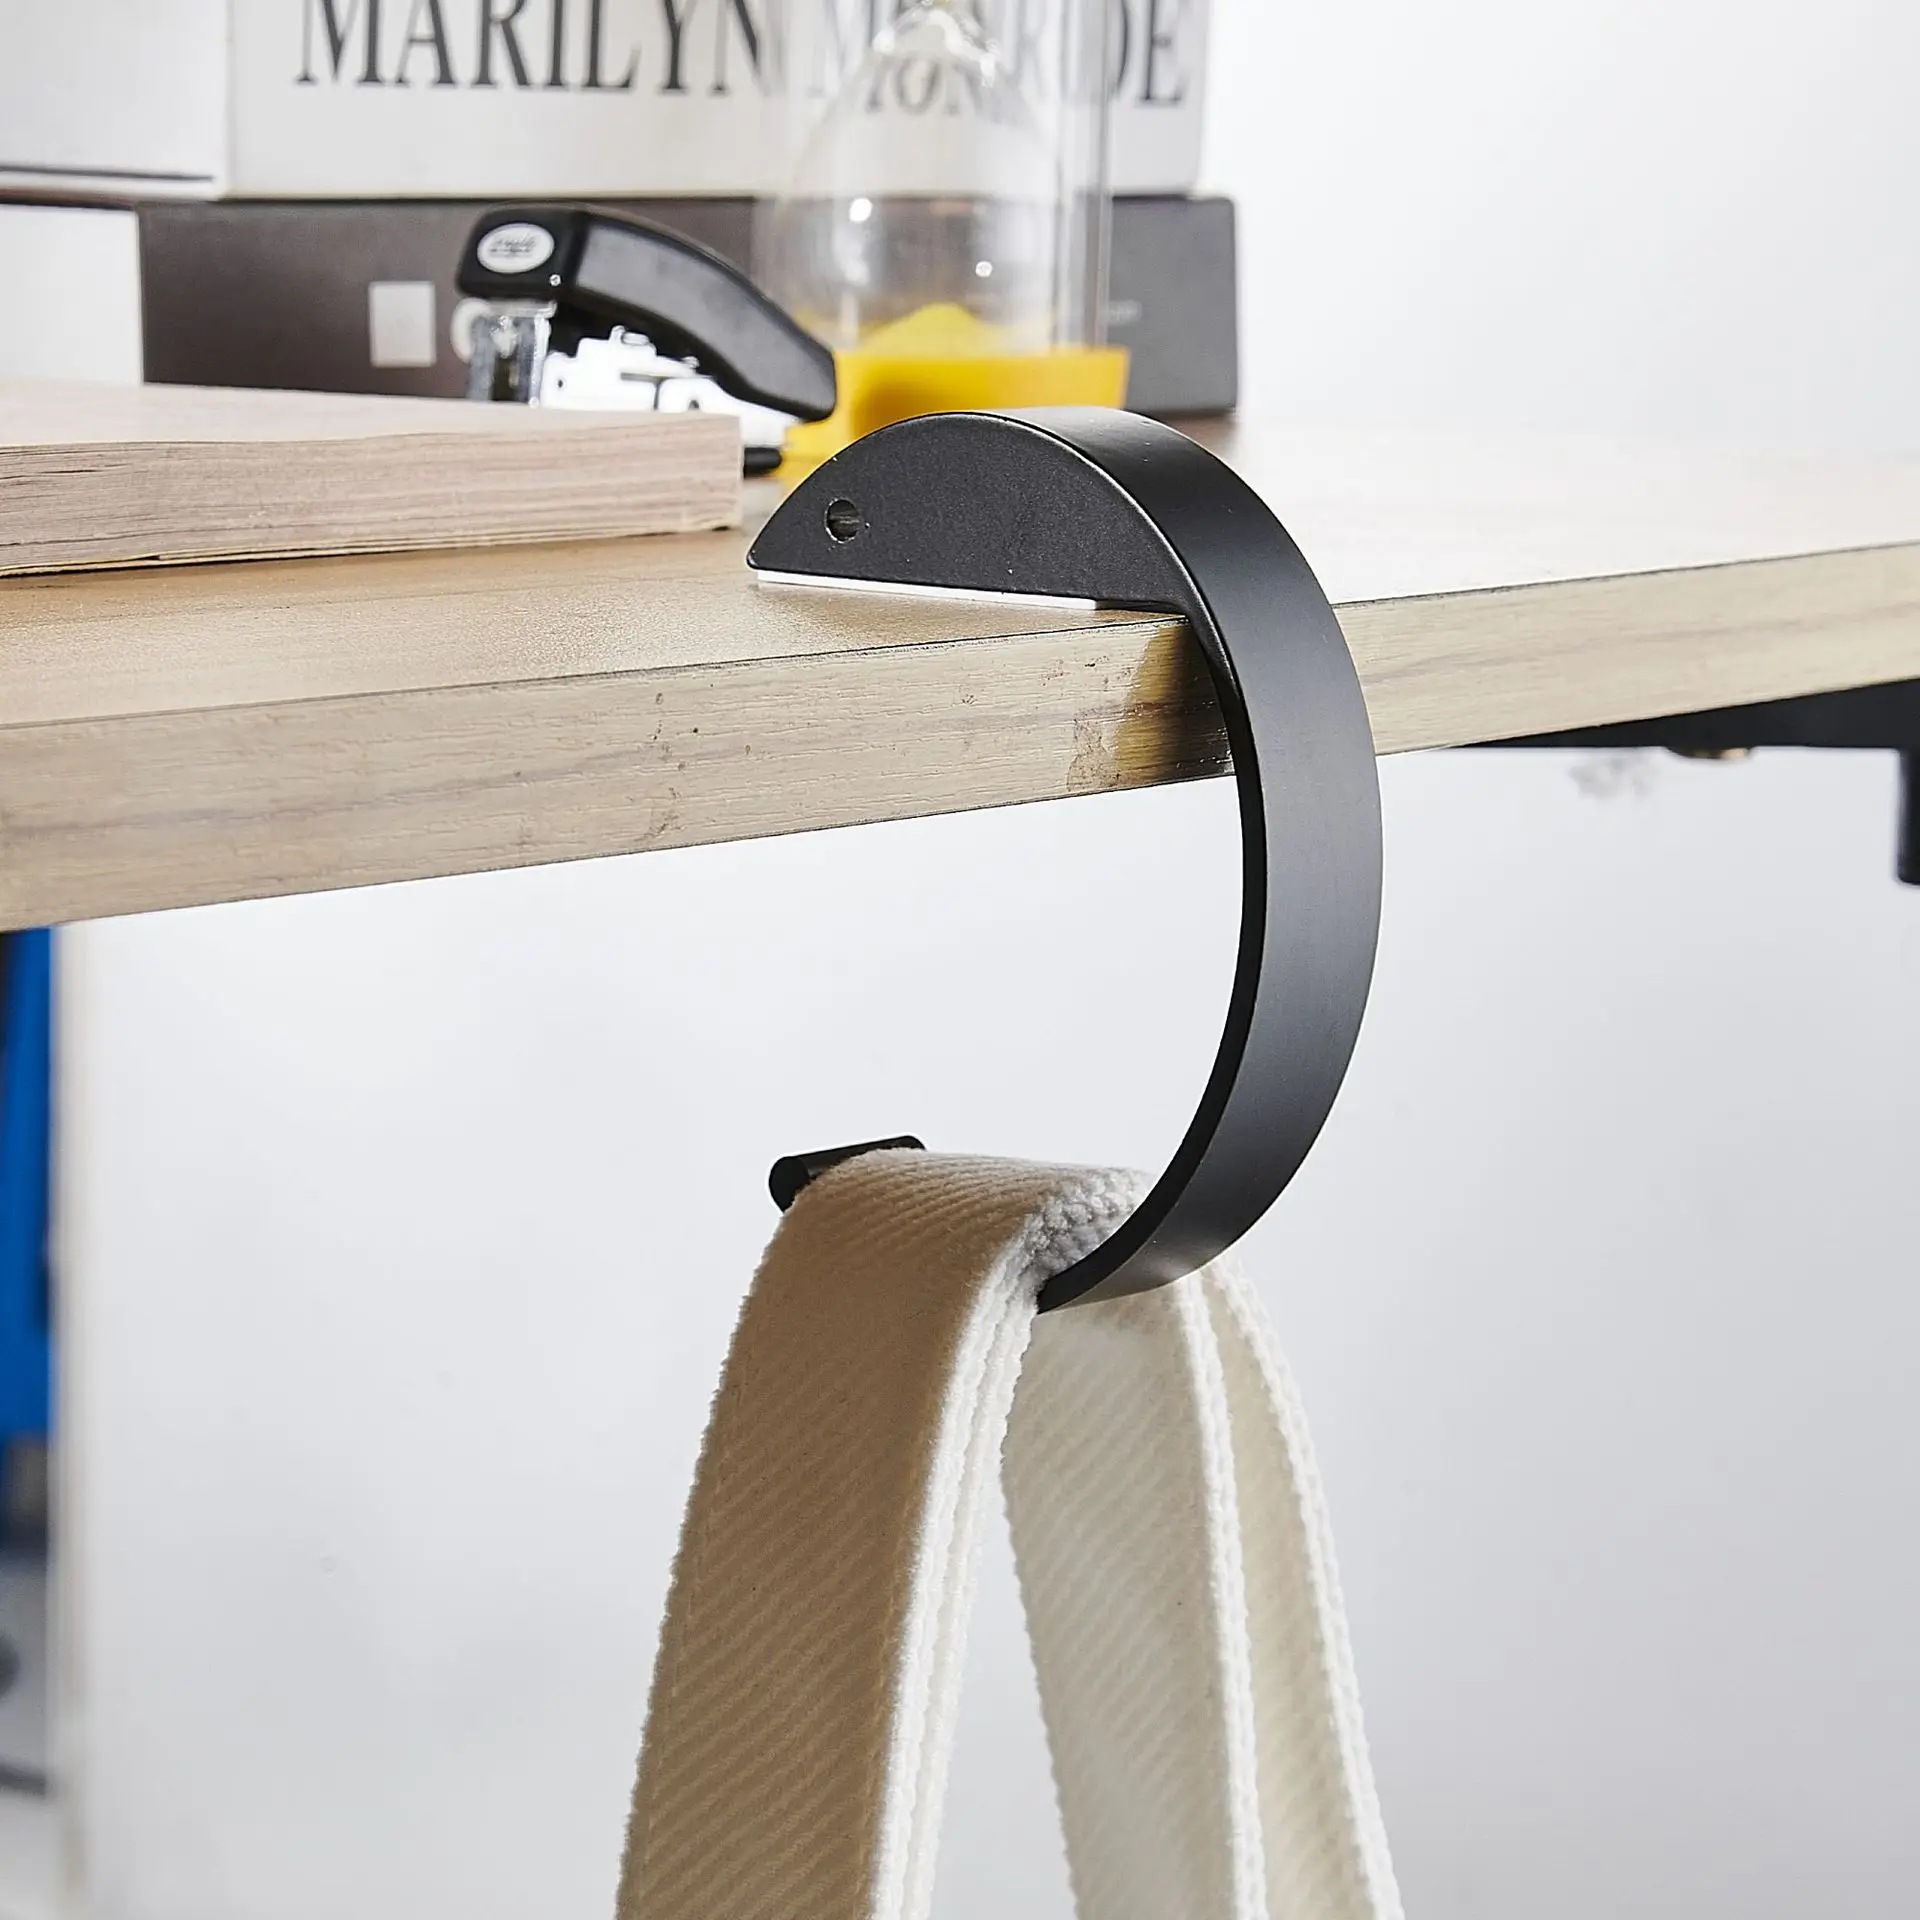 New Design Customized Table portable practical hook Student bag hook office desk mobile bag hook artifact desk side